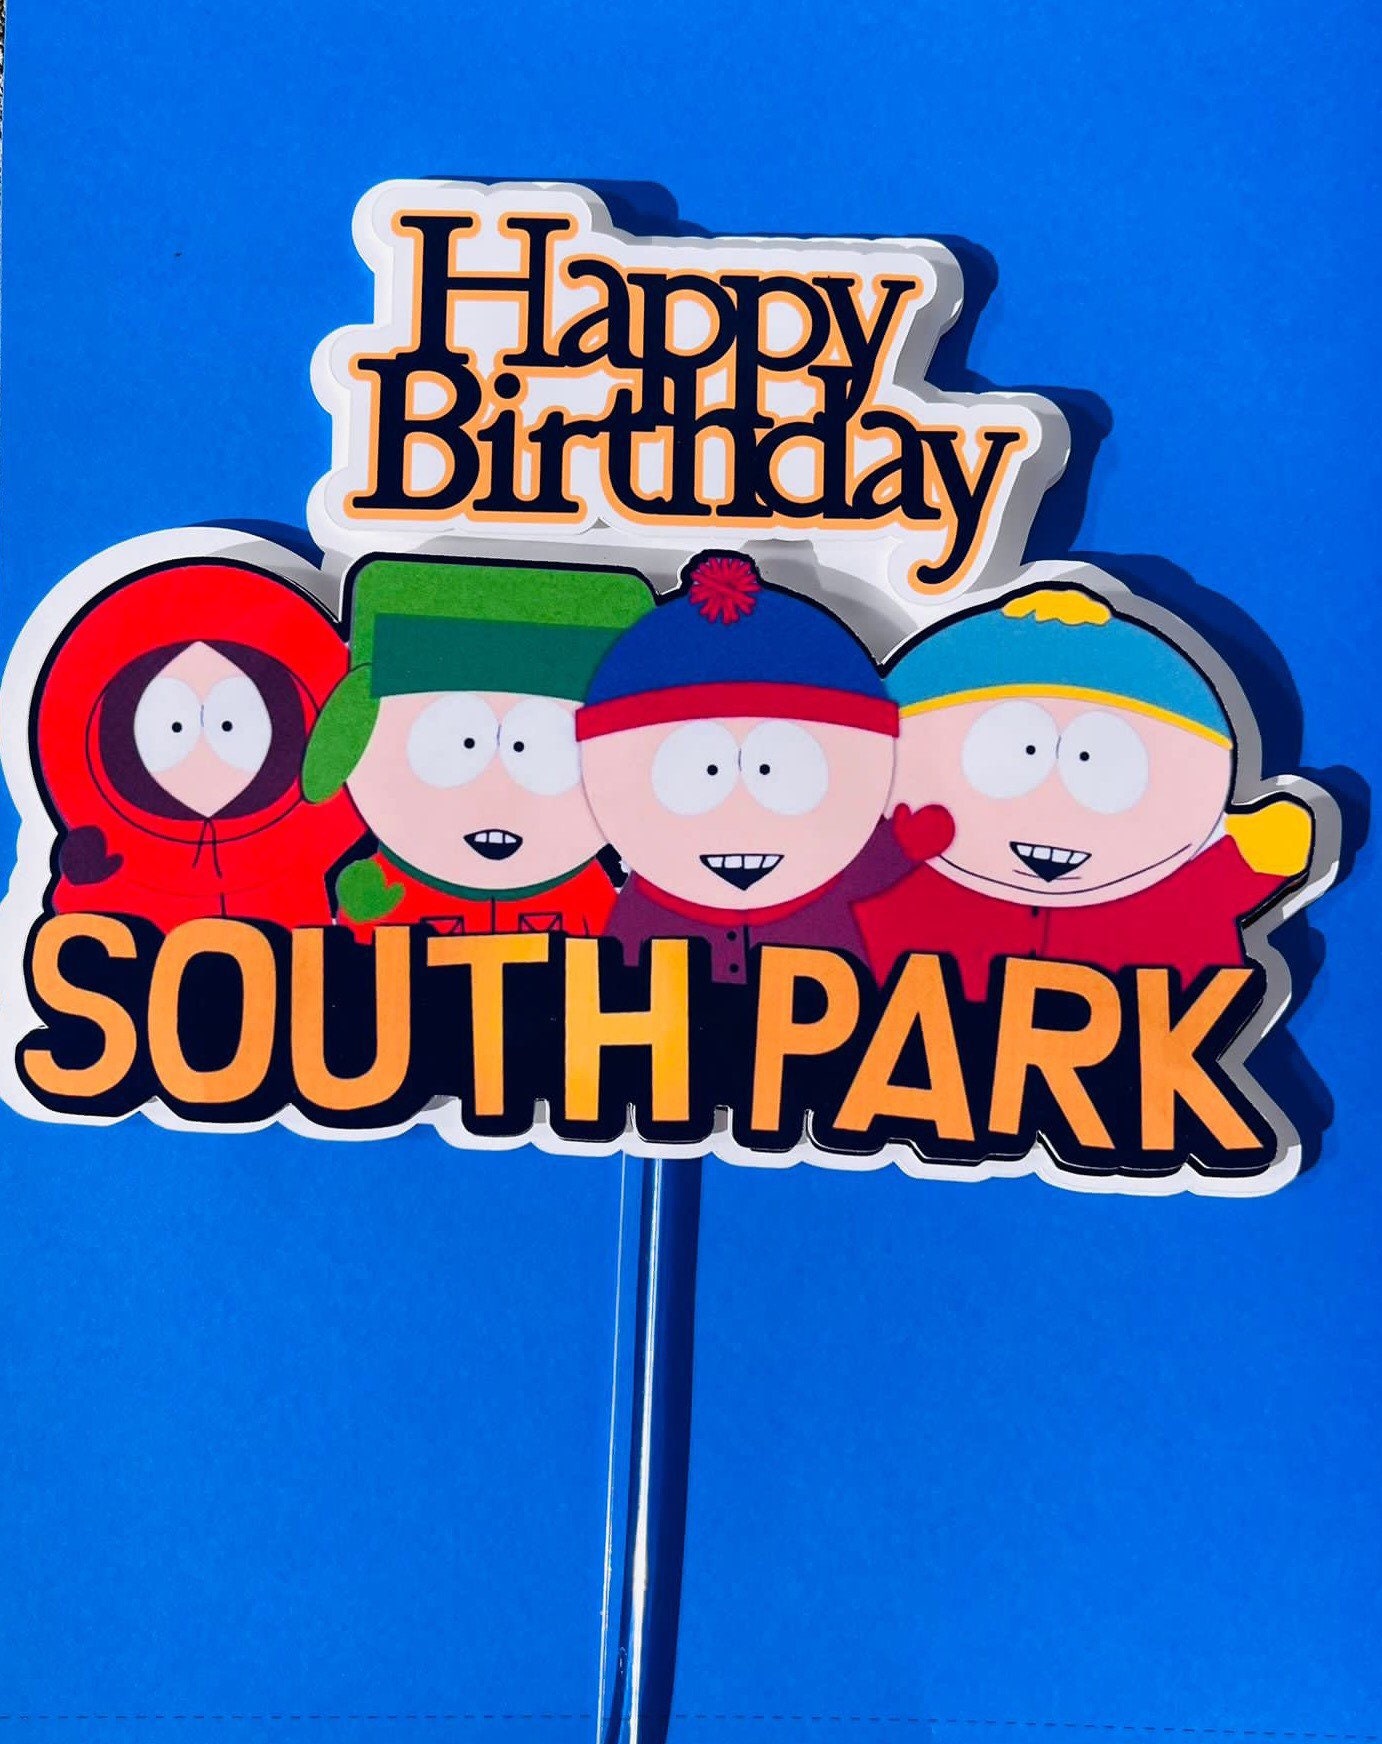 South Park South Park Cake Topper South Park Happy Birthday Etsy